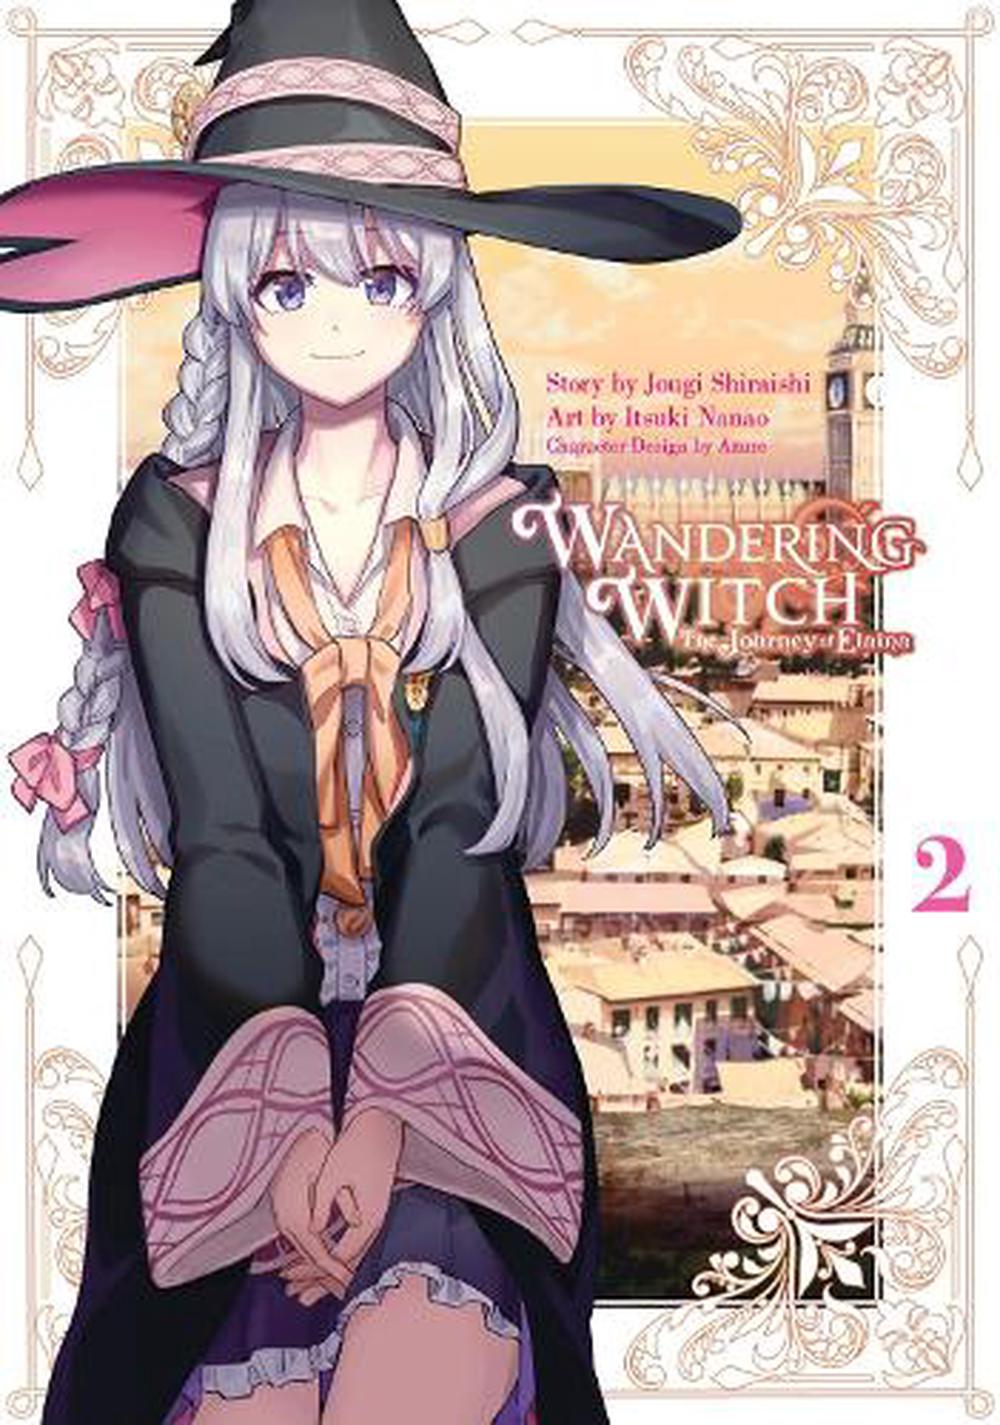 Wandering Witch Manga 02 The Journey Of Elaina By Jougi Shiraishi 2527